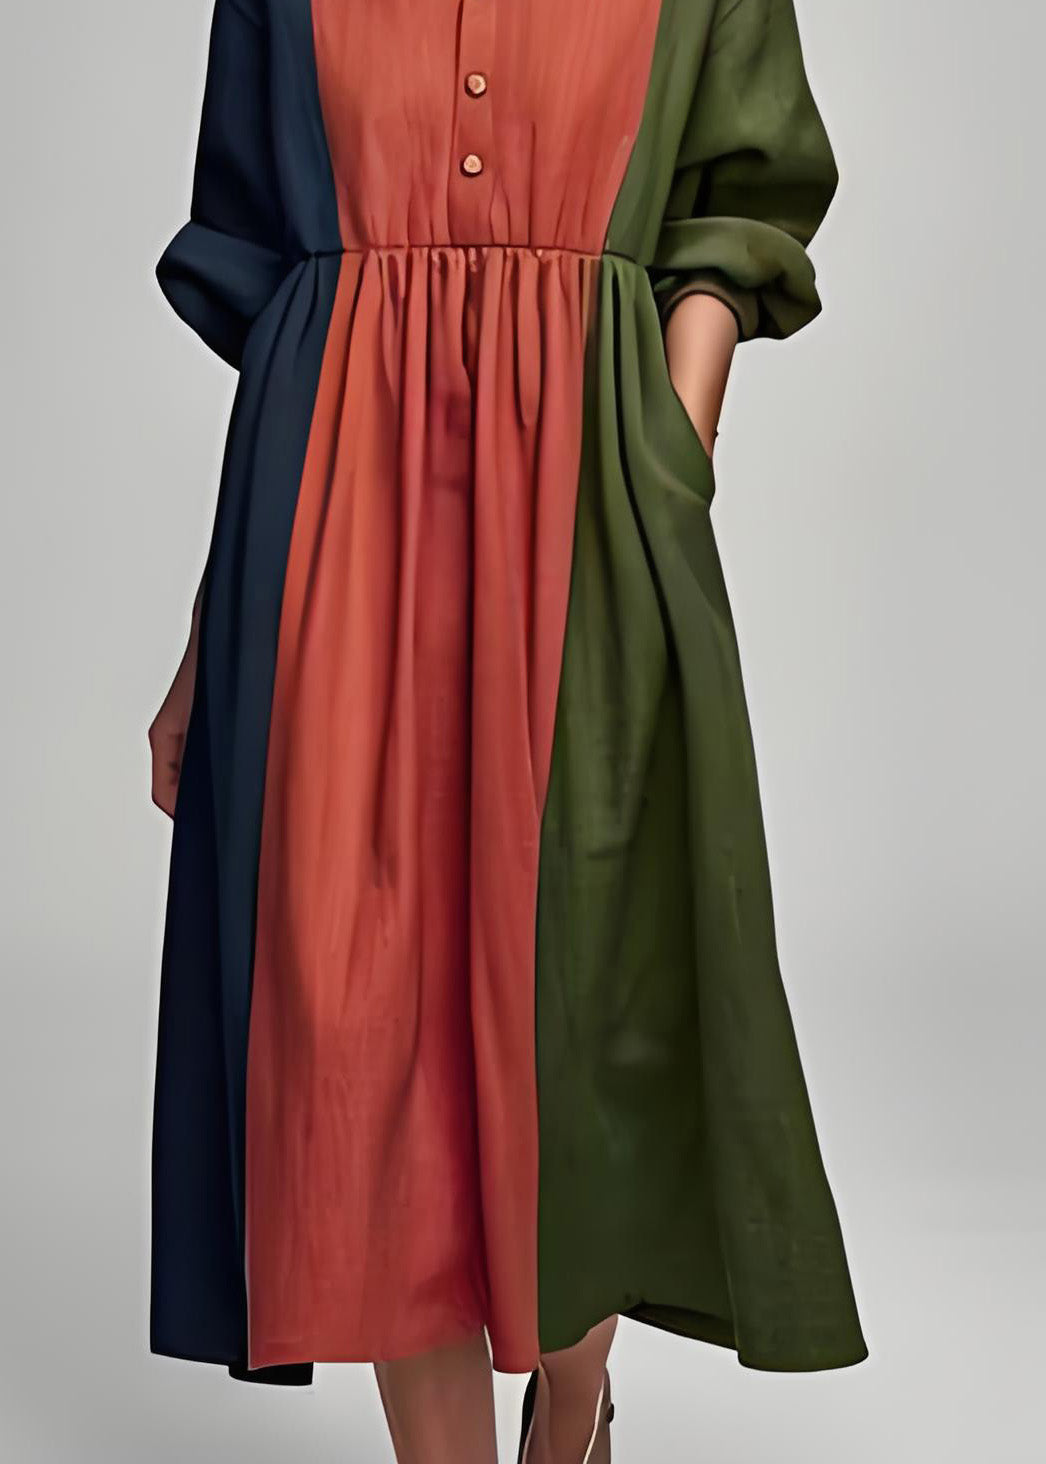 Italian Colorblock Peter Pan Collar Patchwork Cotton Dress Long Sleeve